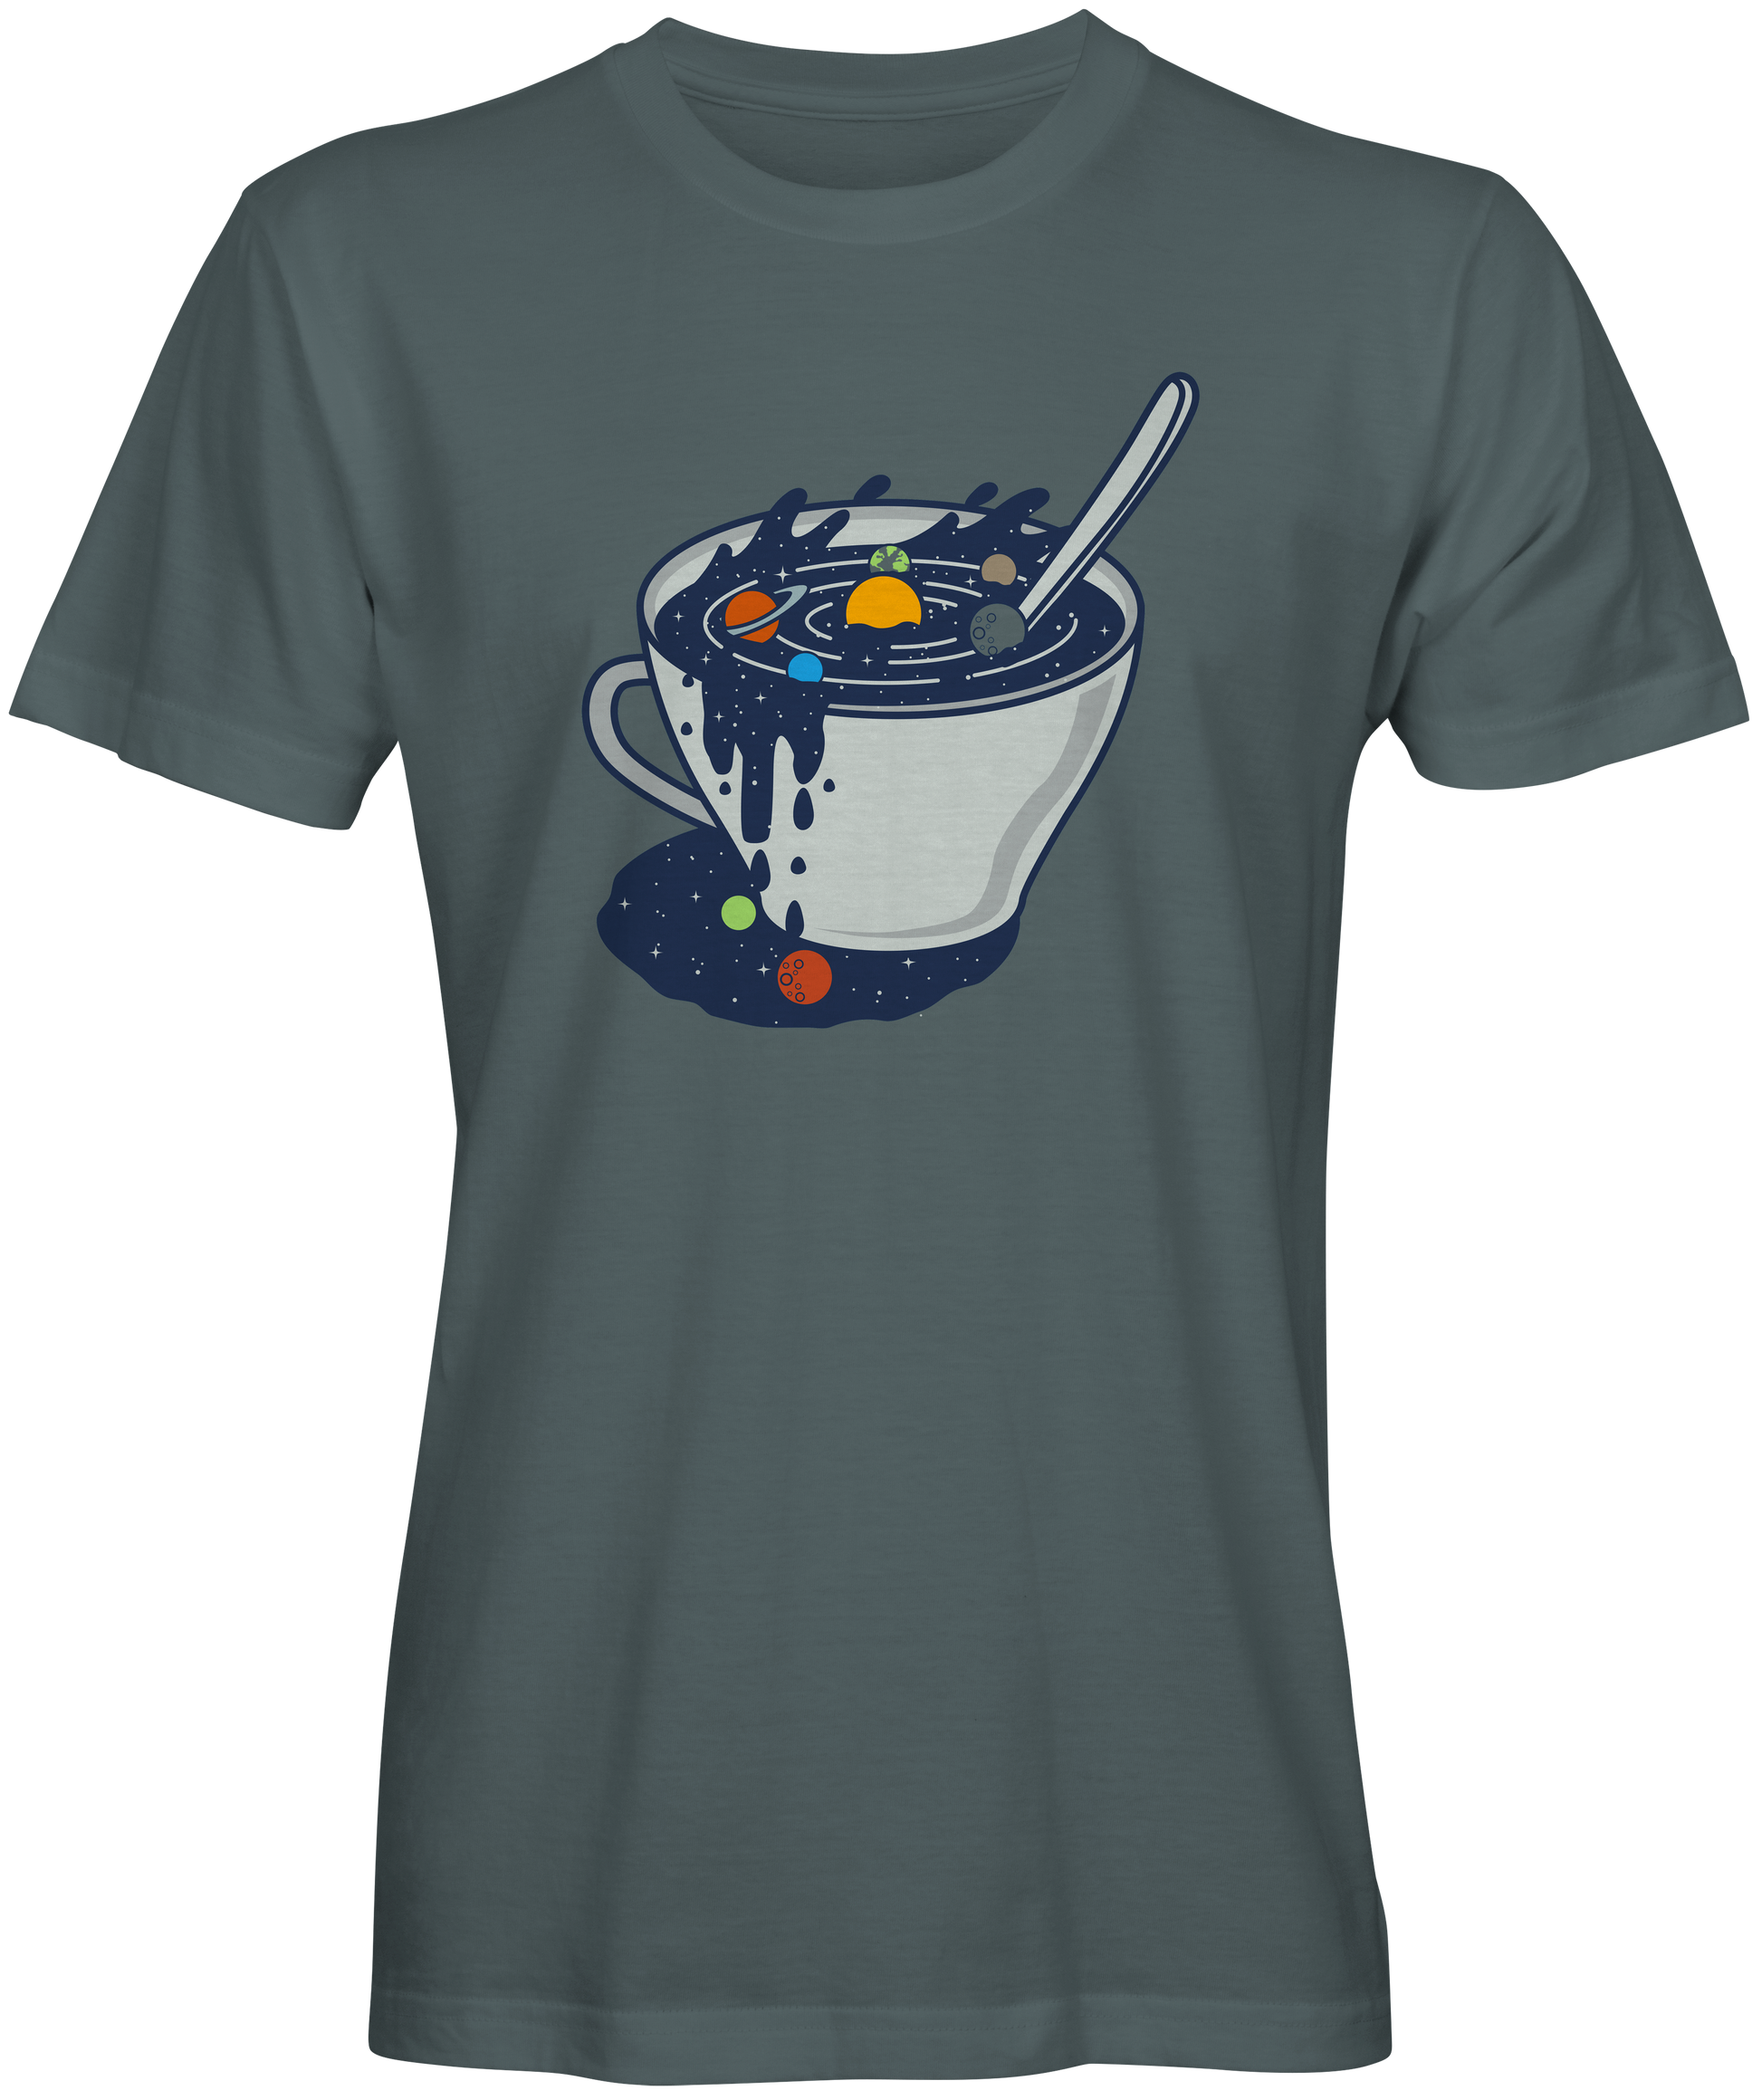 The Galaxy In A Coffee Mug T-shirts